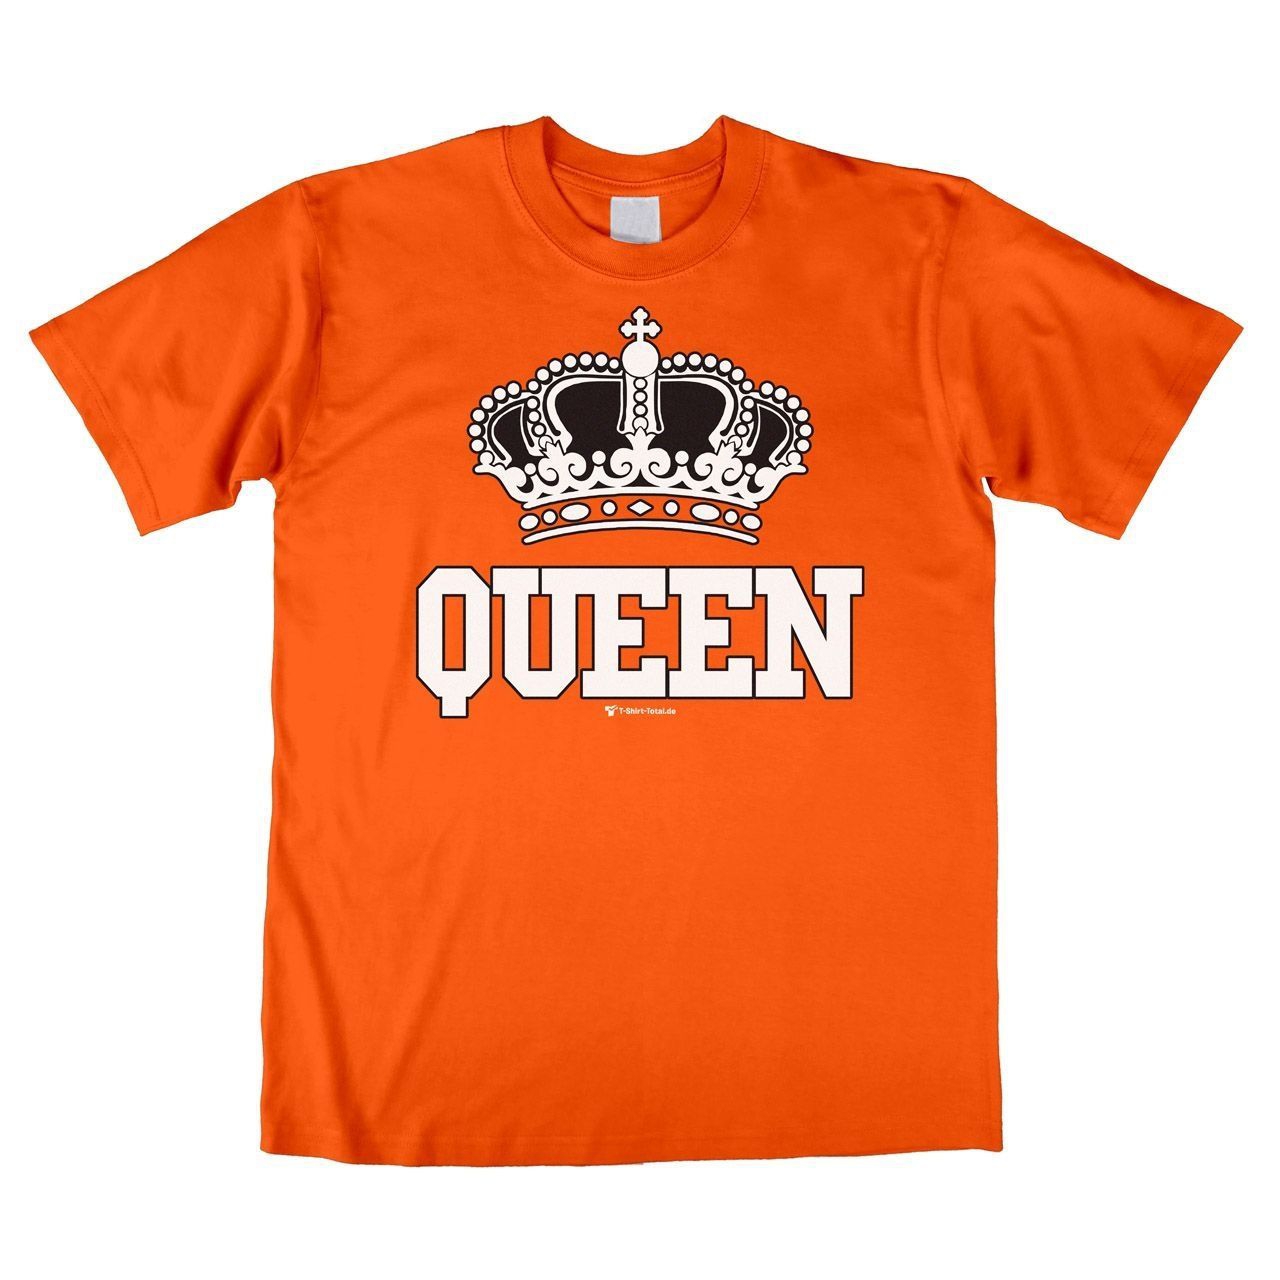 Queen Unisex T-Shirt orange Medium